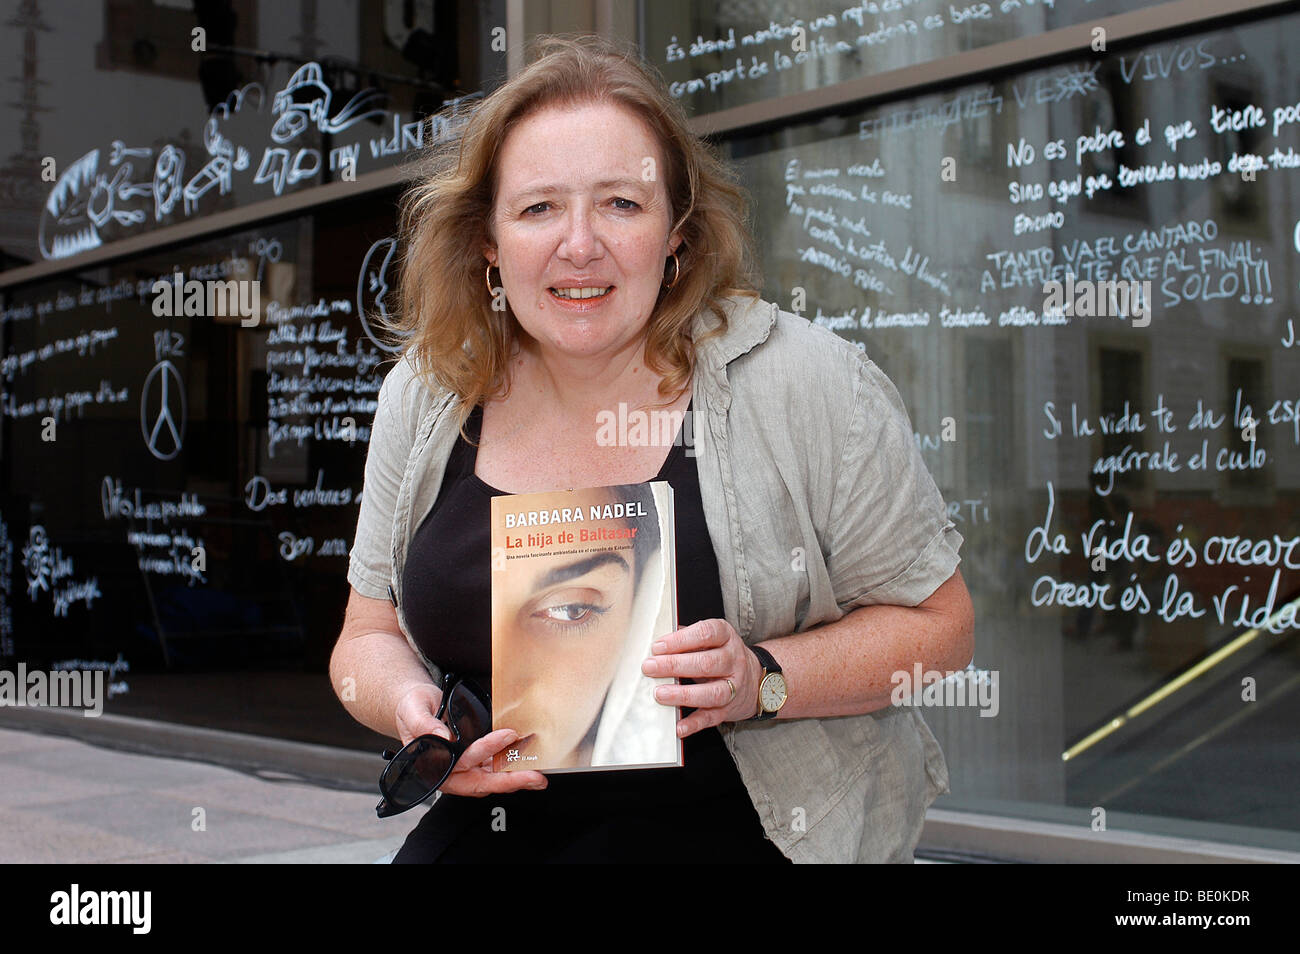 Barbara Nadel, british writer and author Stock Photo